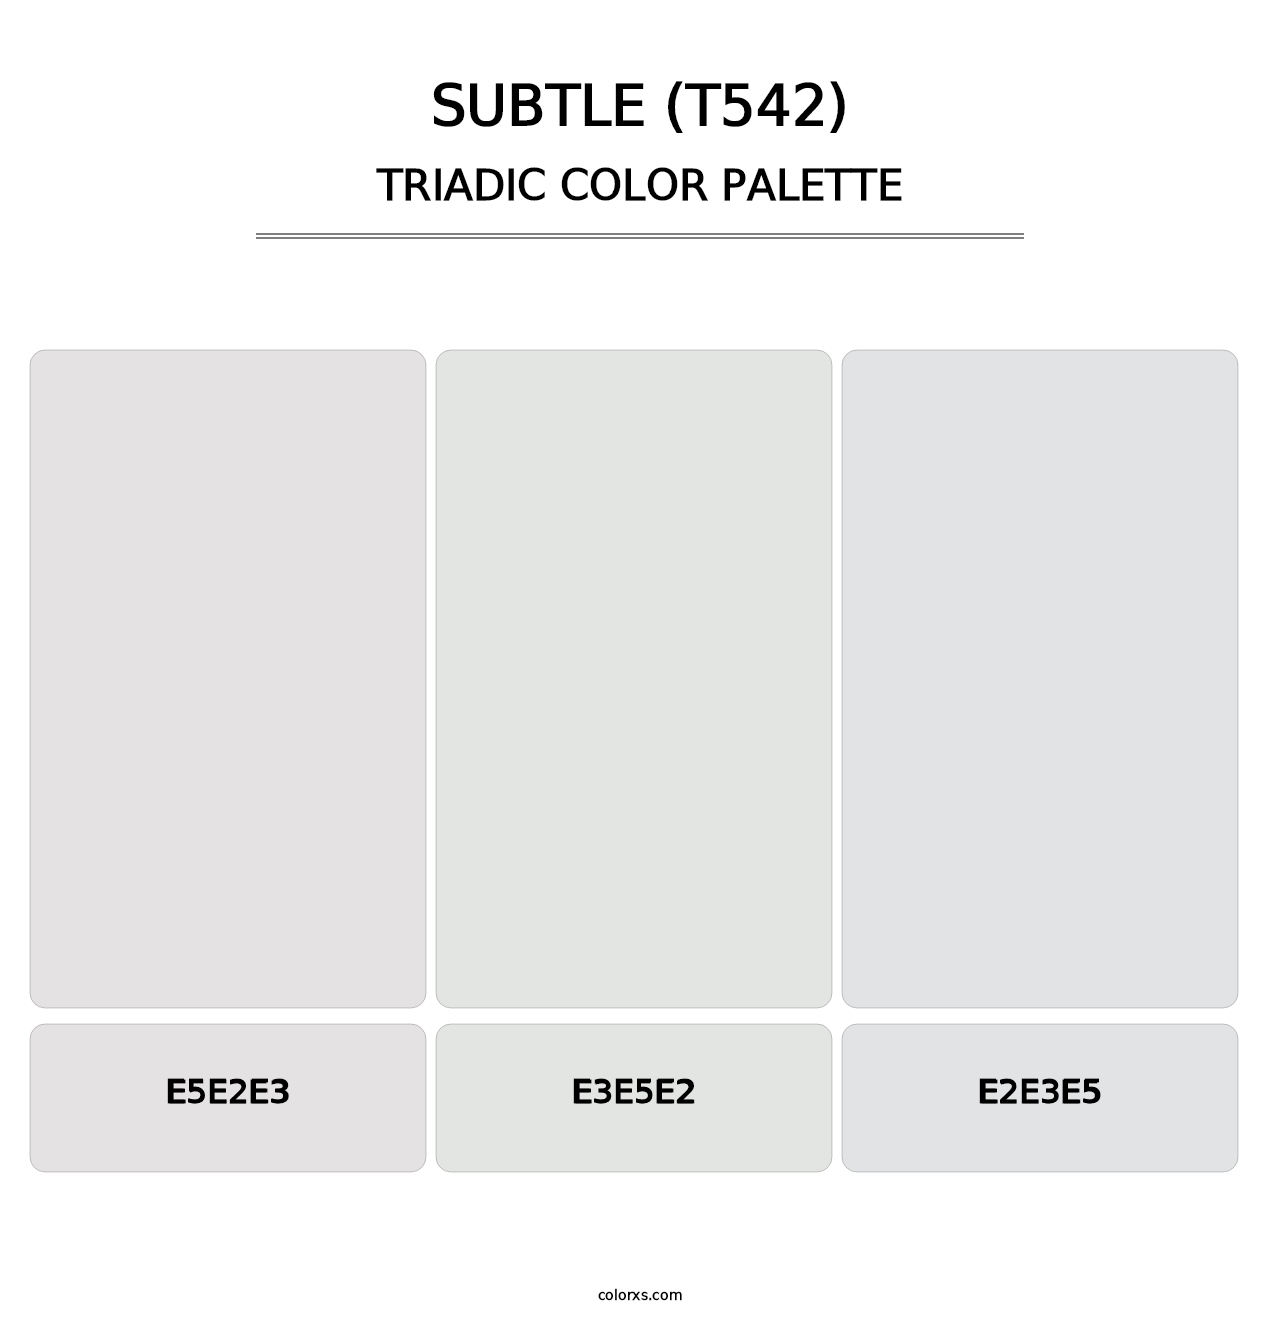 Subtle (T542) - Triadic Color Palette